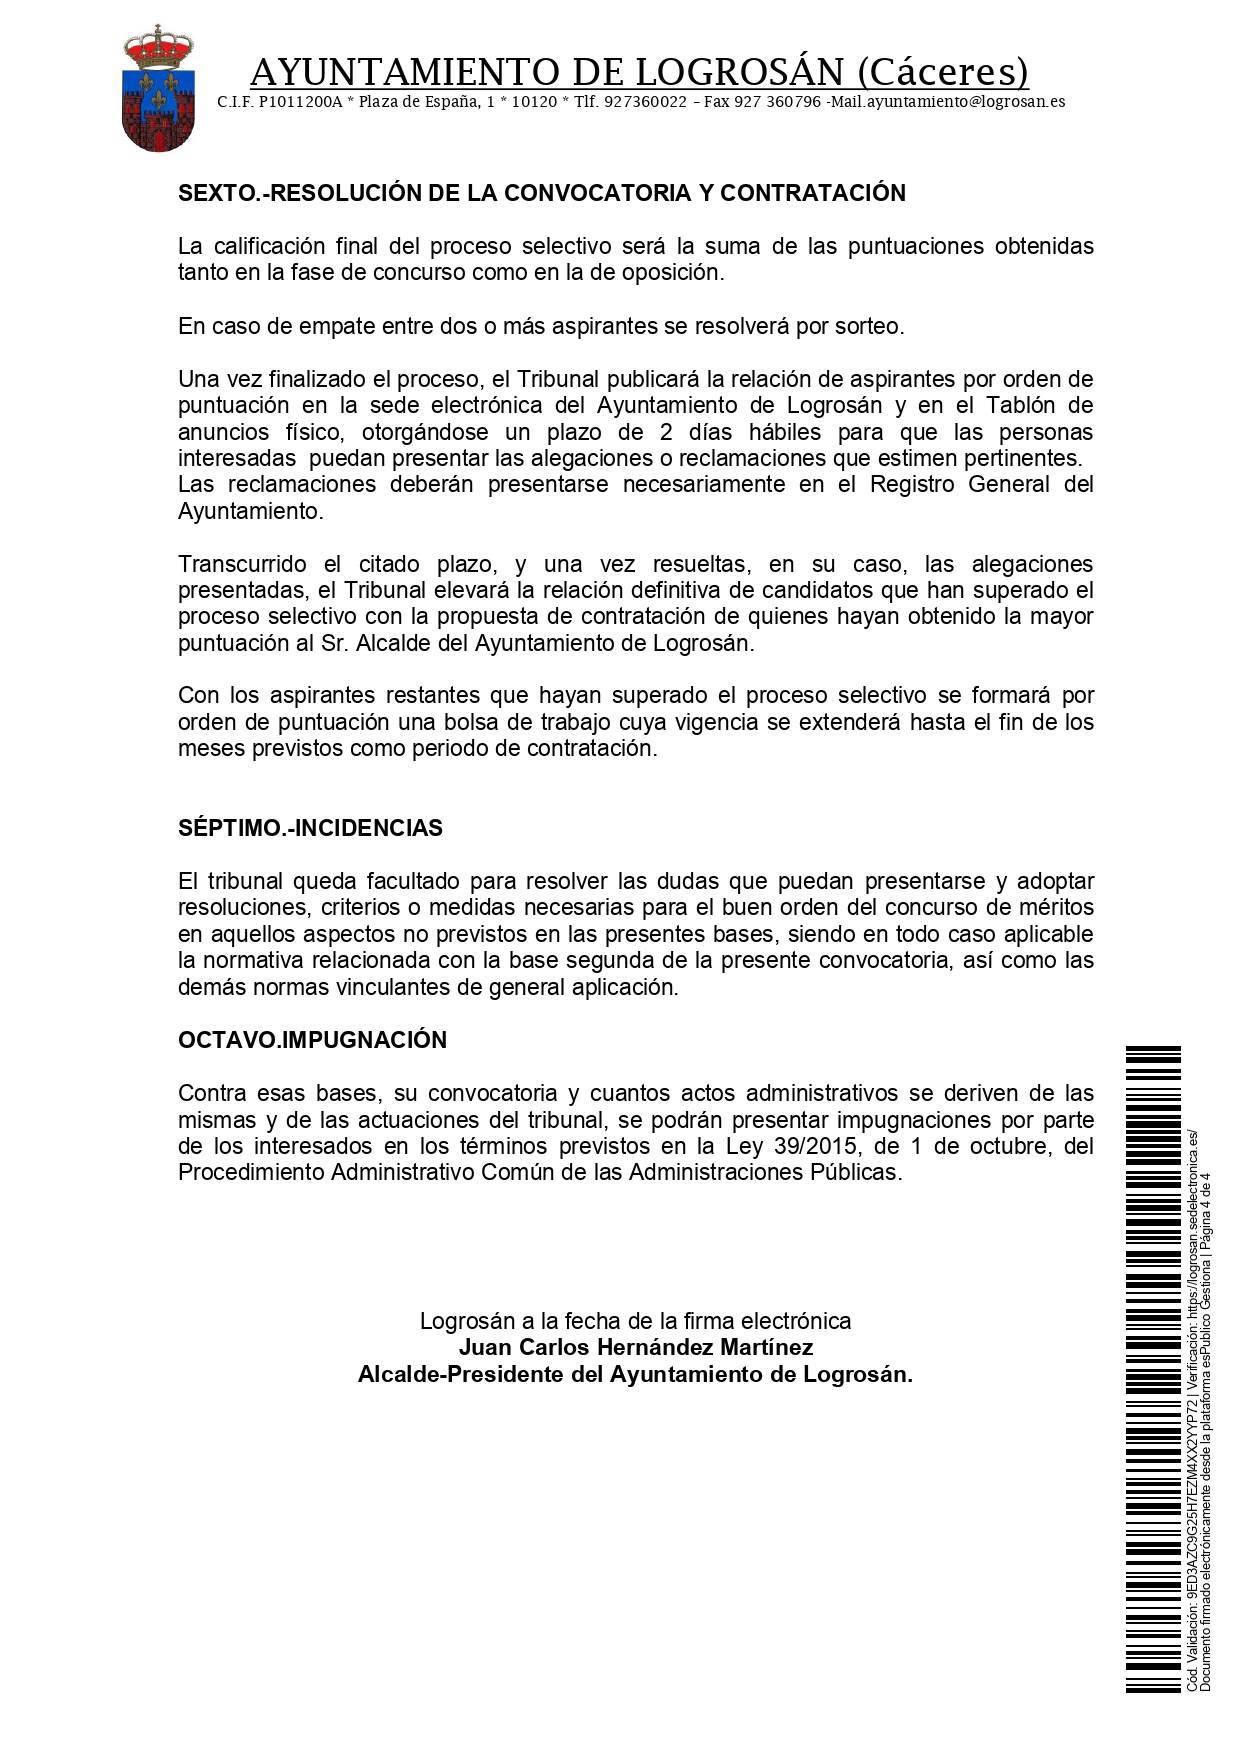 4 socorristas (2021) - Logrosán (Cáceres) 4